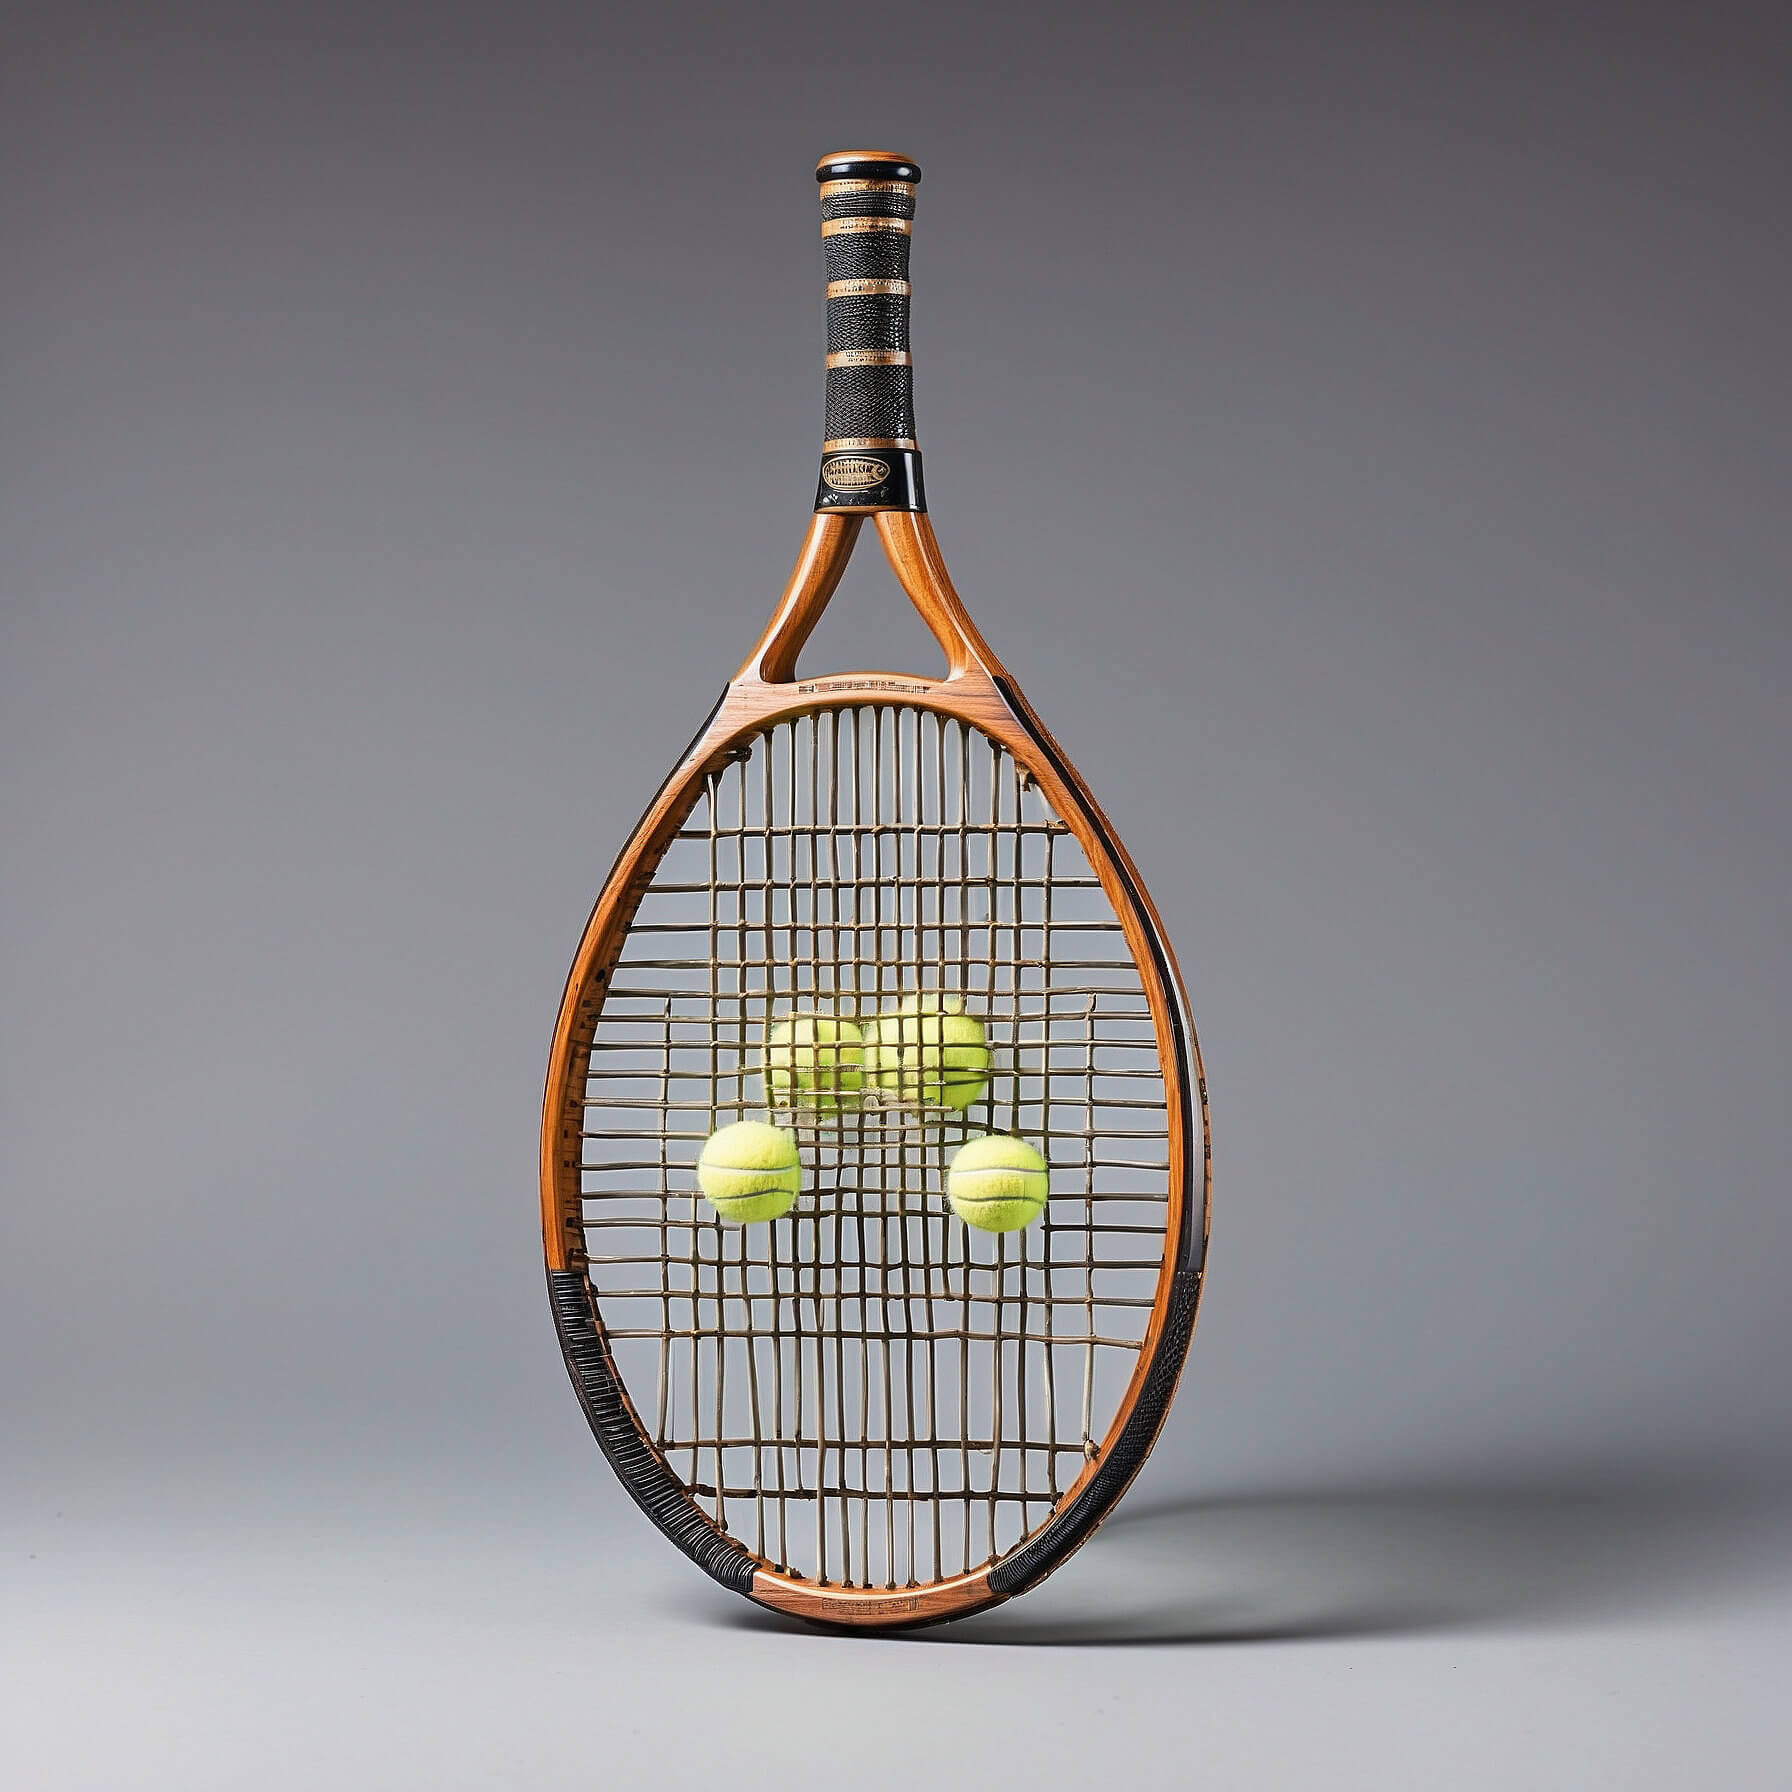 Теннис: групповые занятия